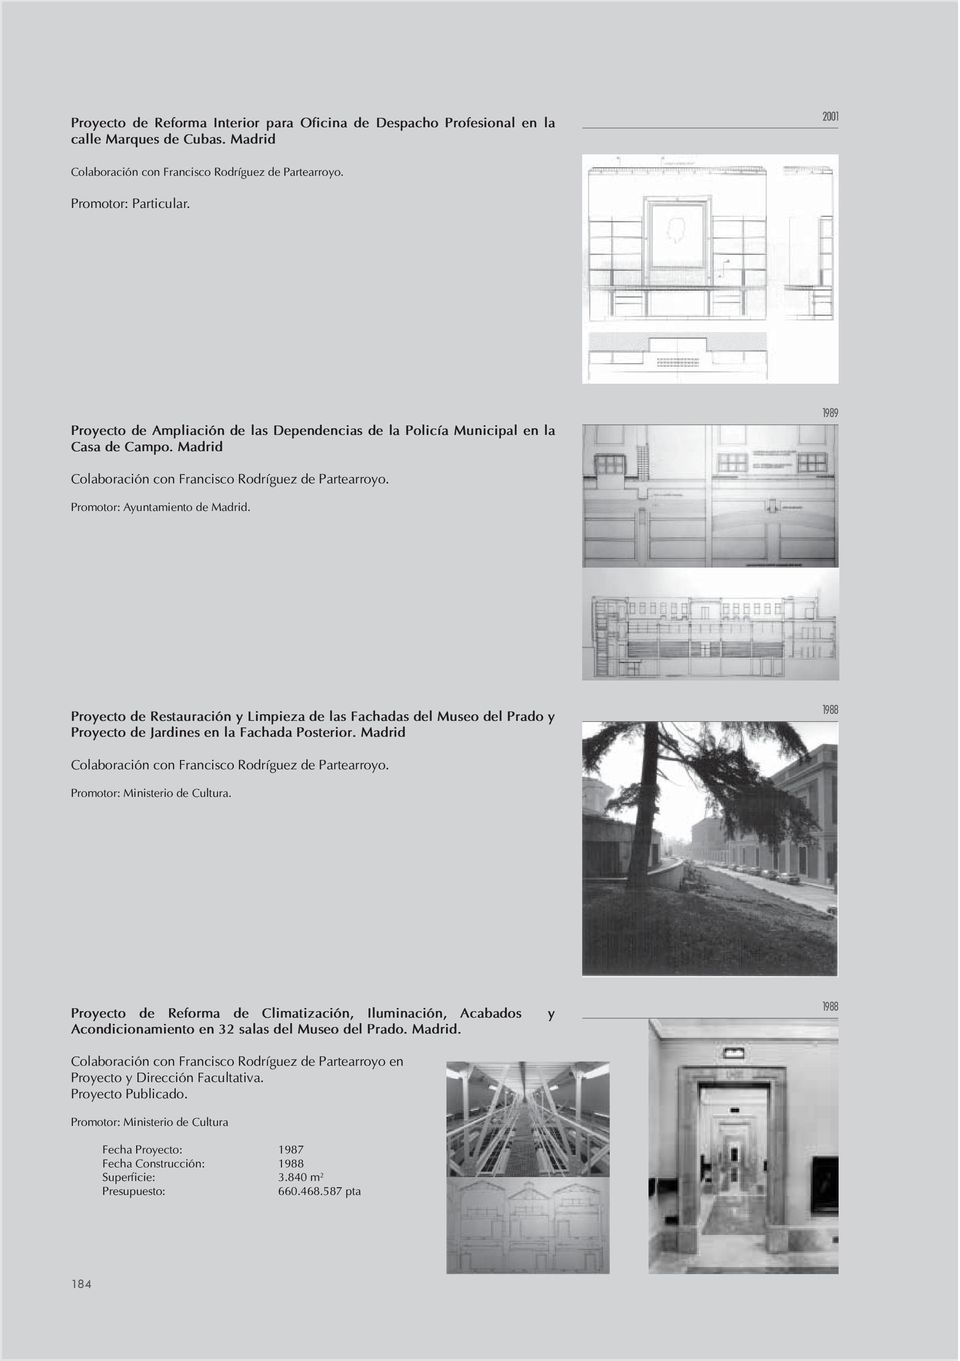 Proyecto de Restauración y Limpieza de las Fachadas del Museo del Prado y Proyecto de Jardines en la Fachada Posterior. Madrid 1988 Promotor: Ministerio de Cultura.